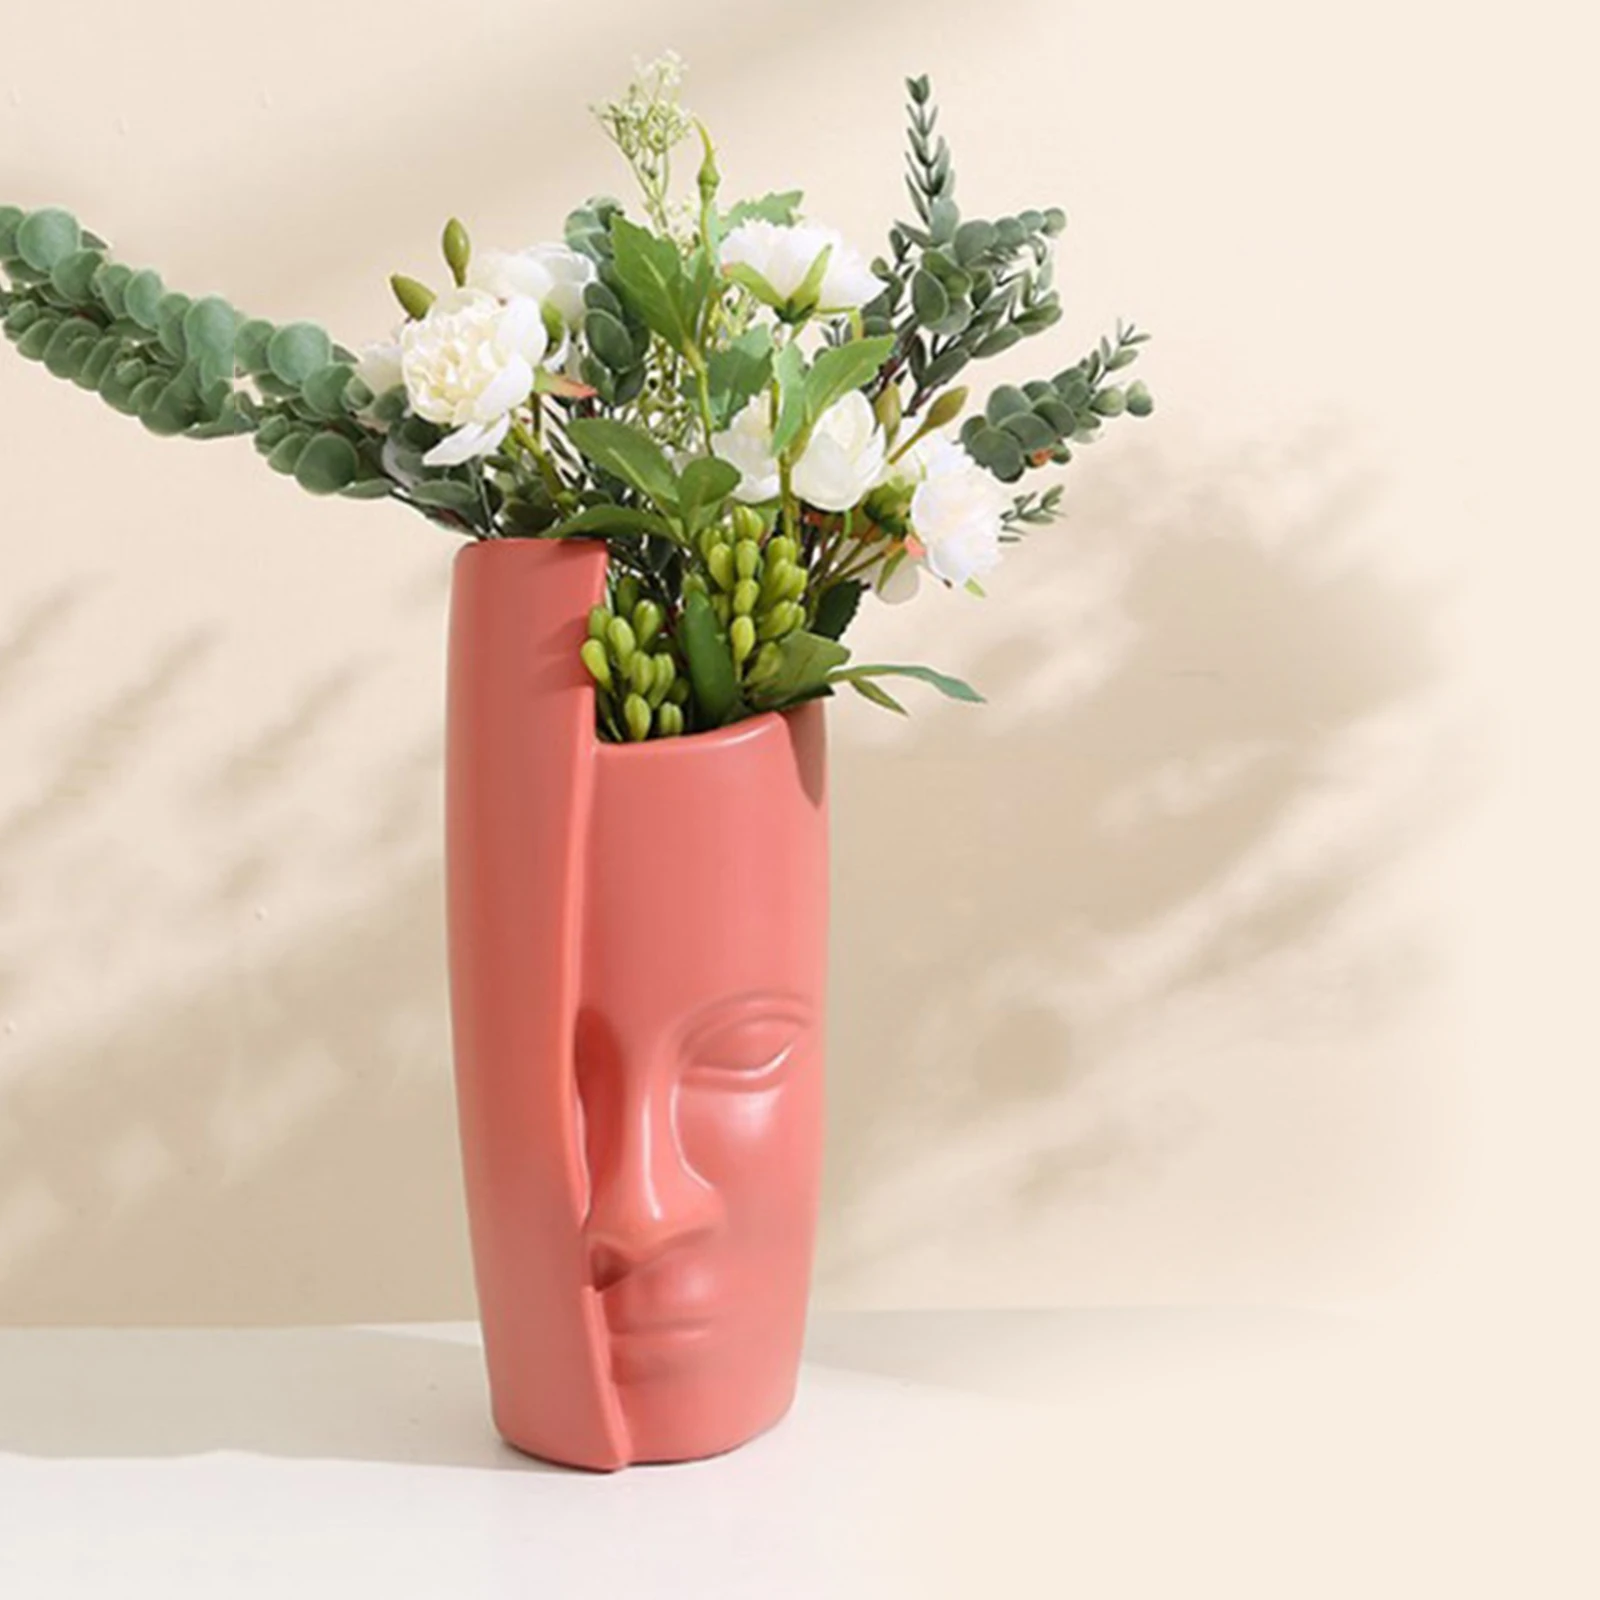 Decorative Flower Vase Human Face Planter Pot Flower Arrangements Home